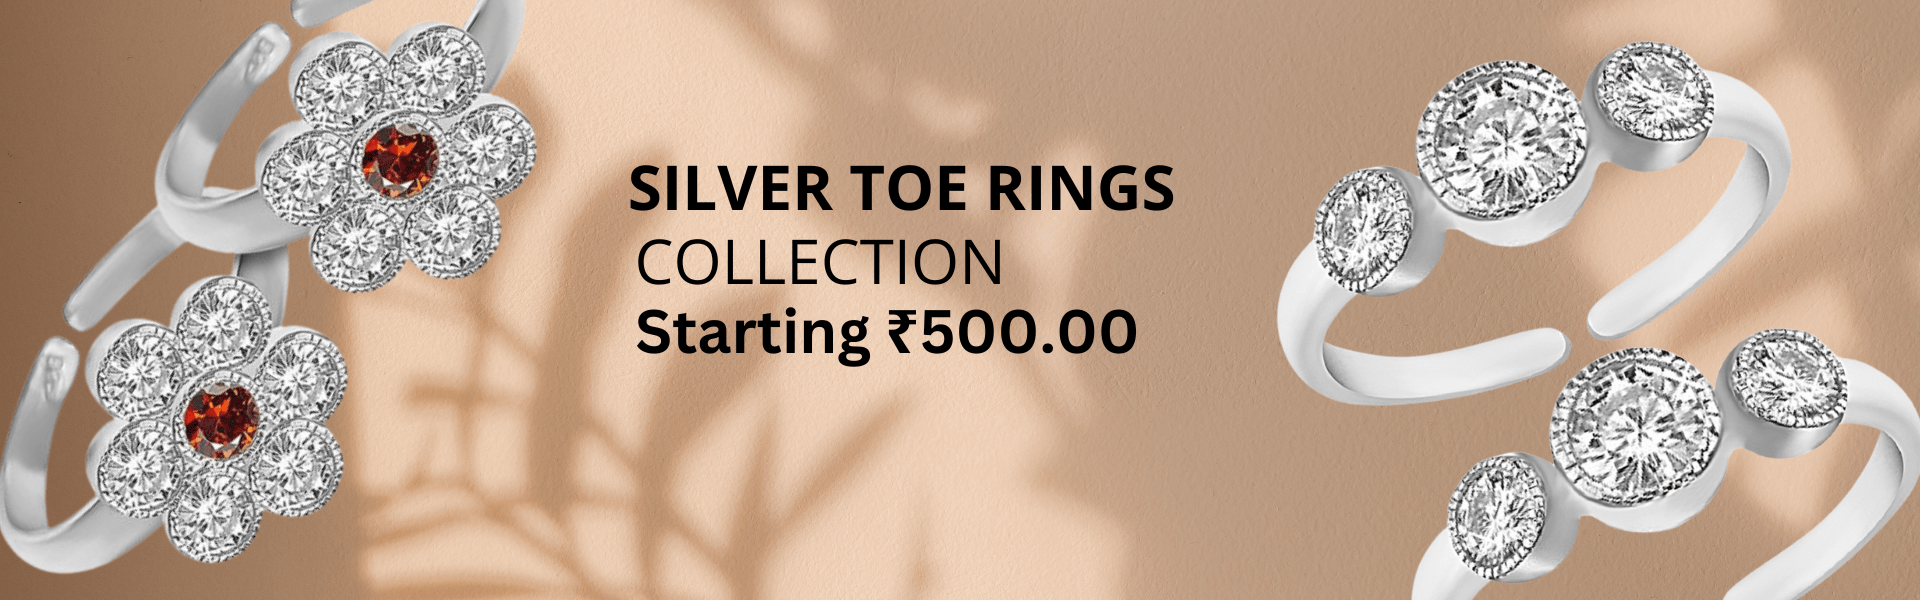 Buy silver toe rings online